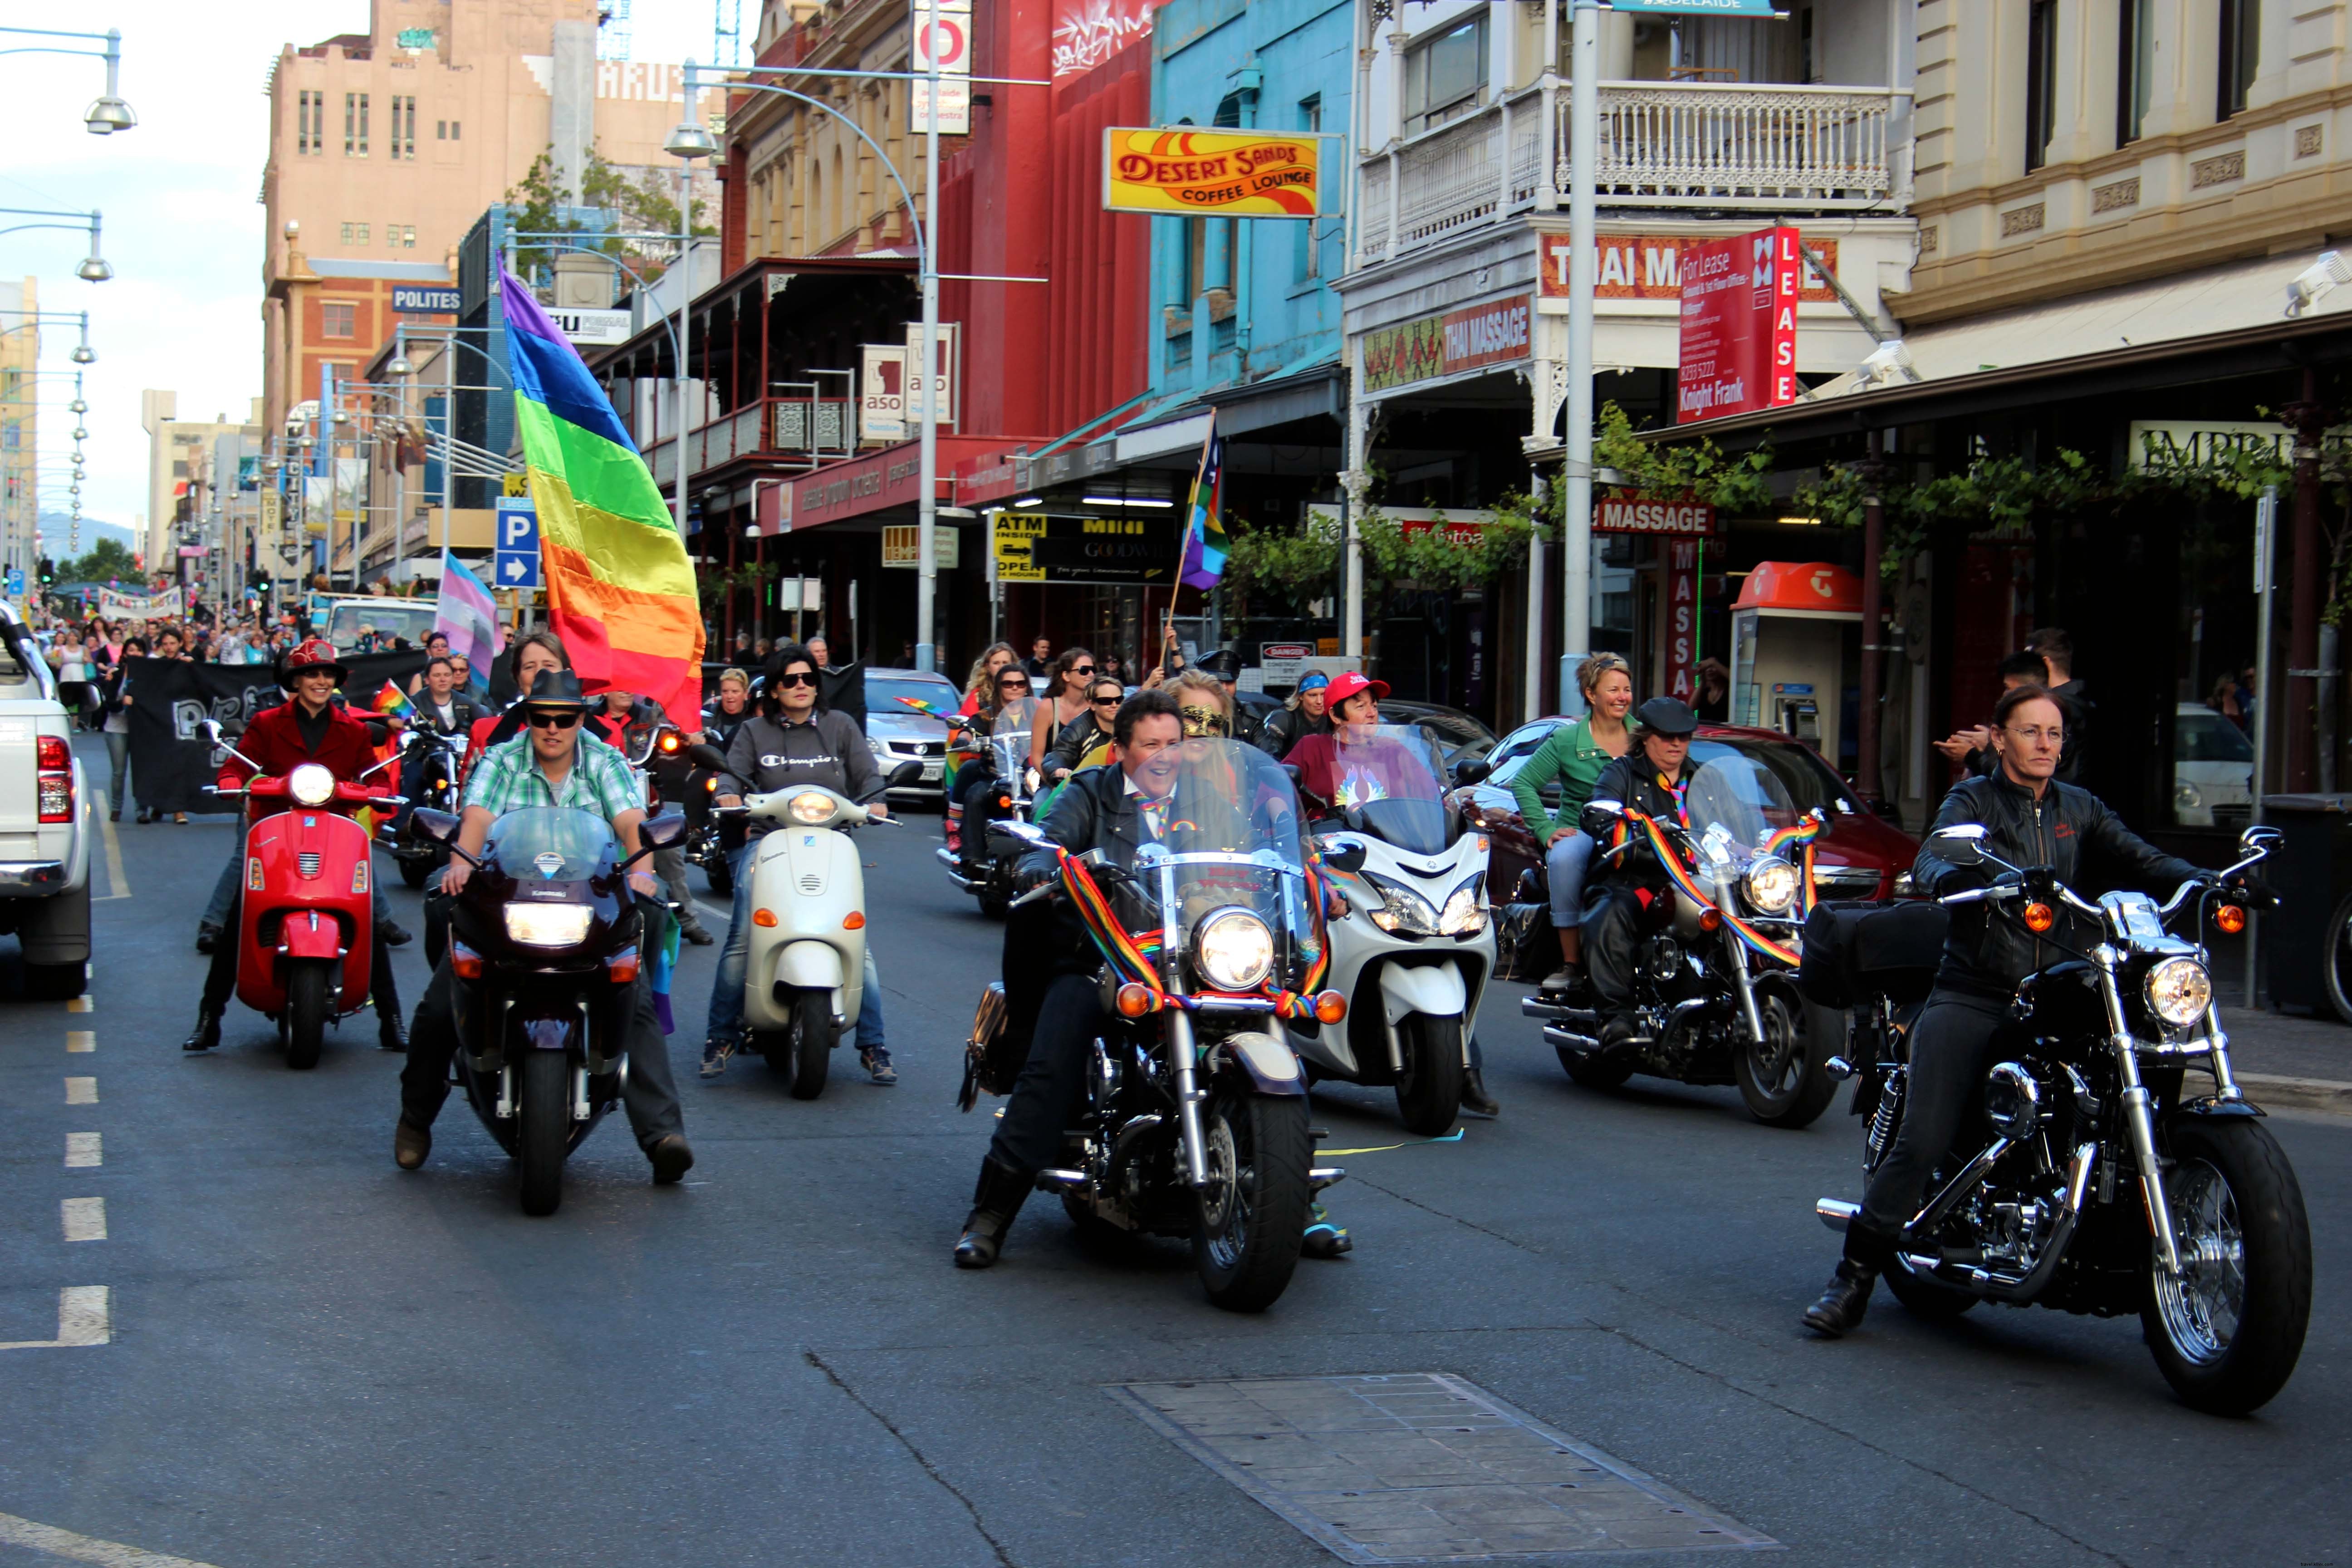 Les meilleurs événements et bars LGBT en Australie